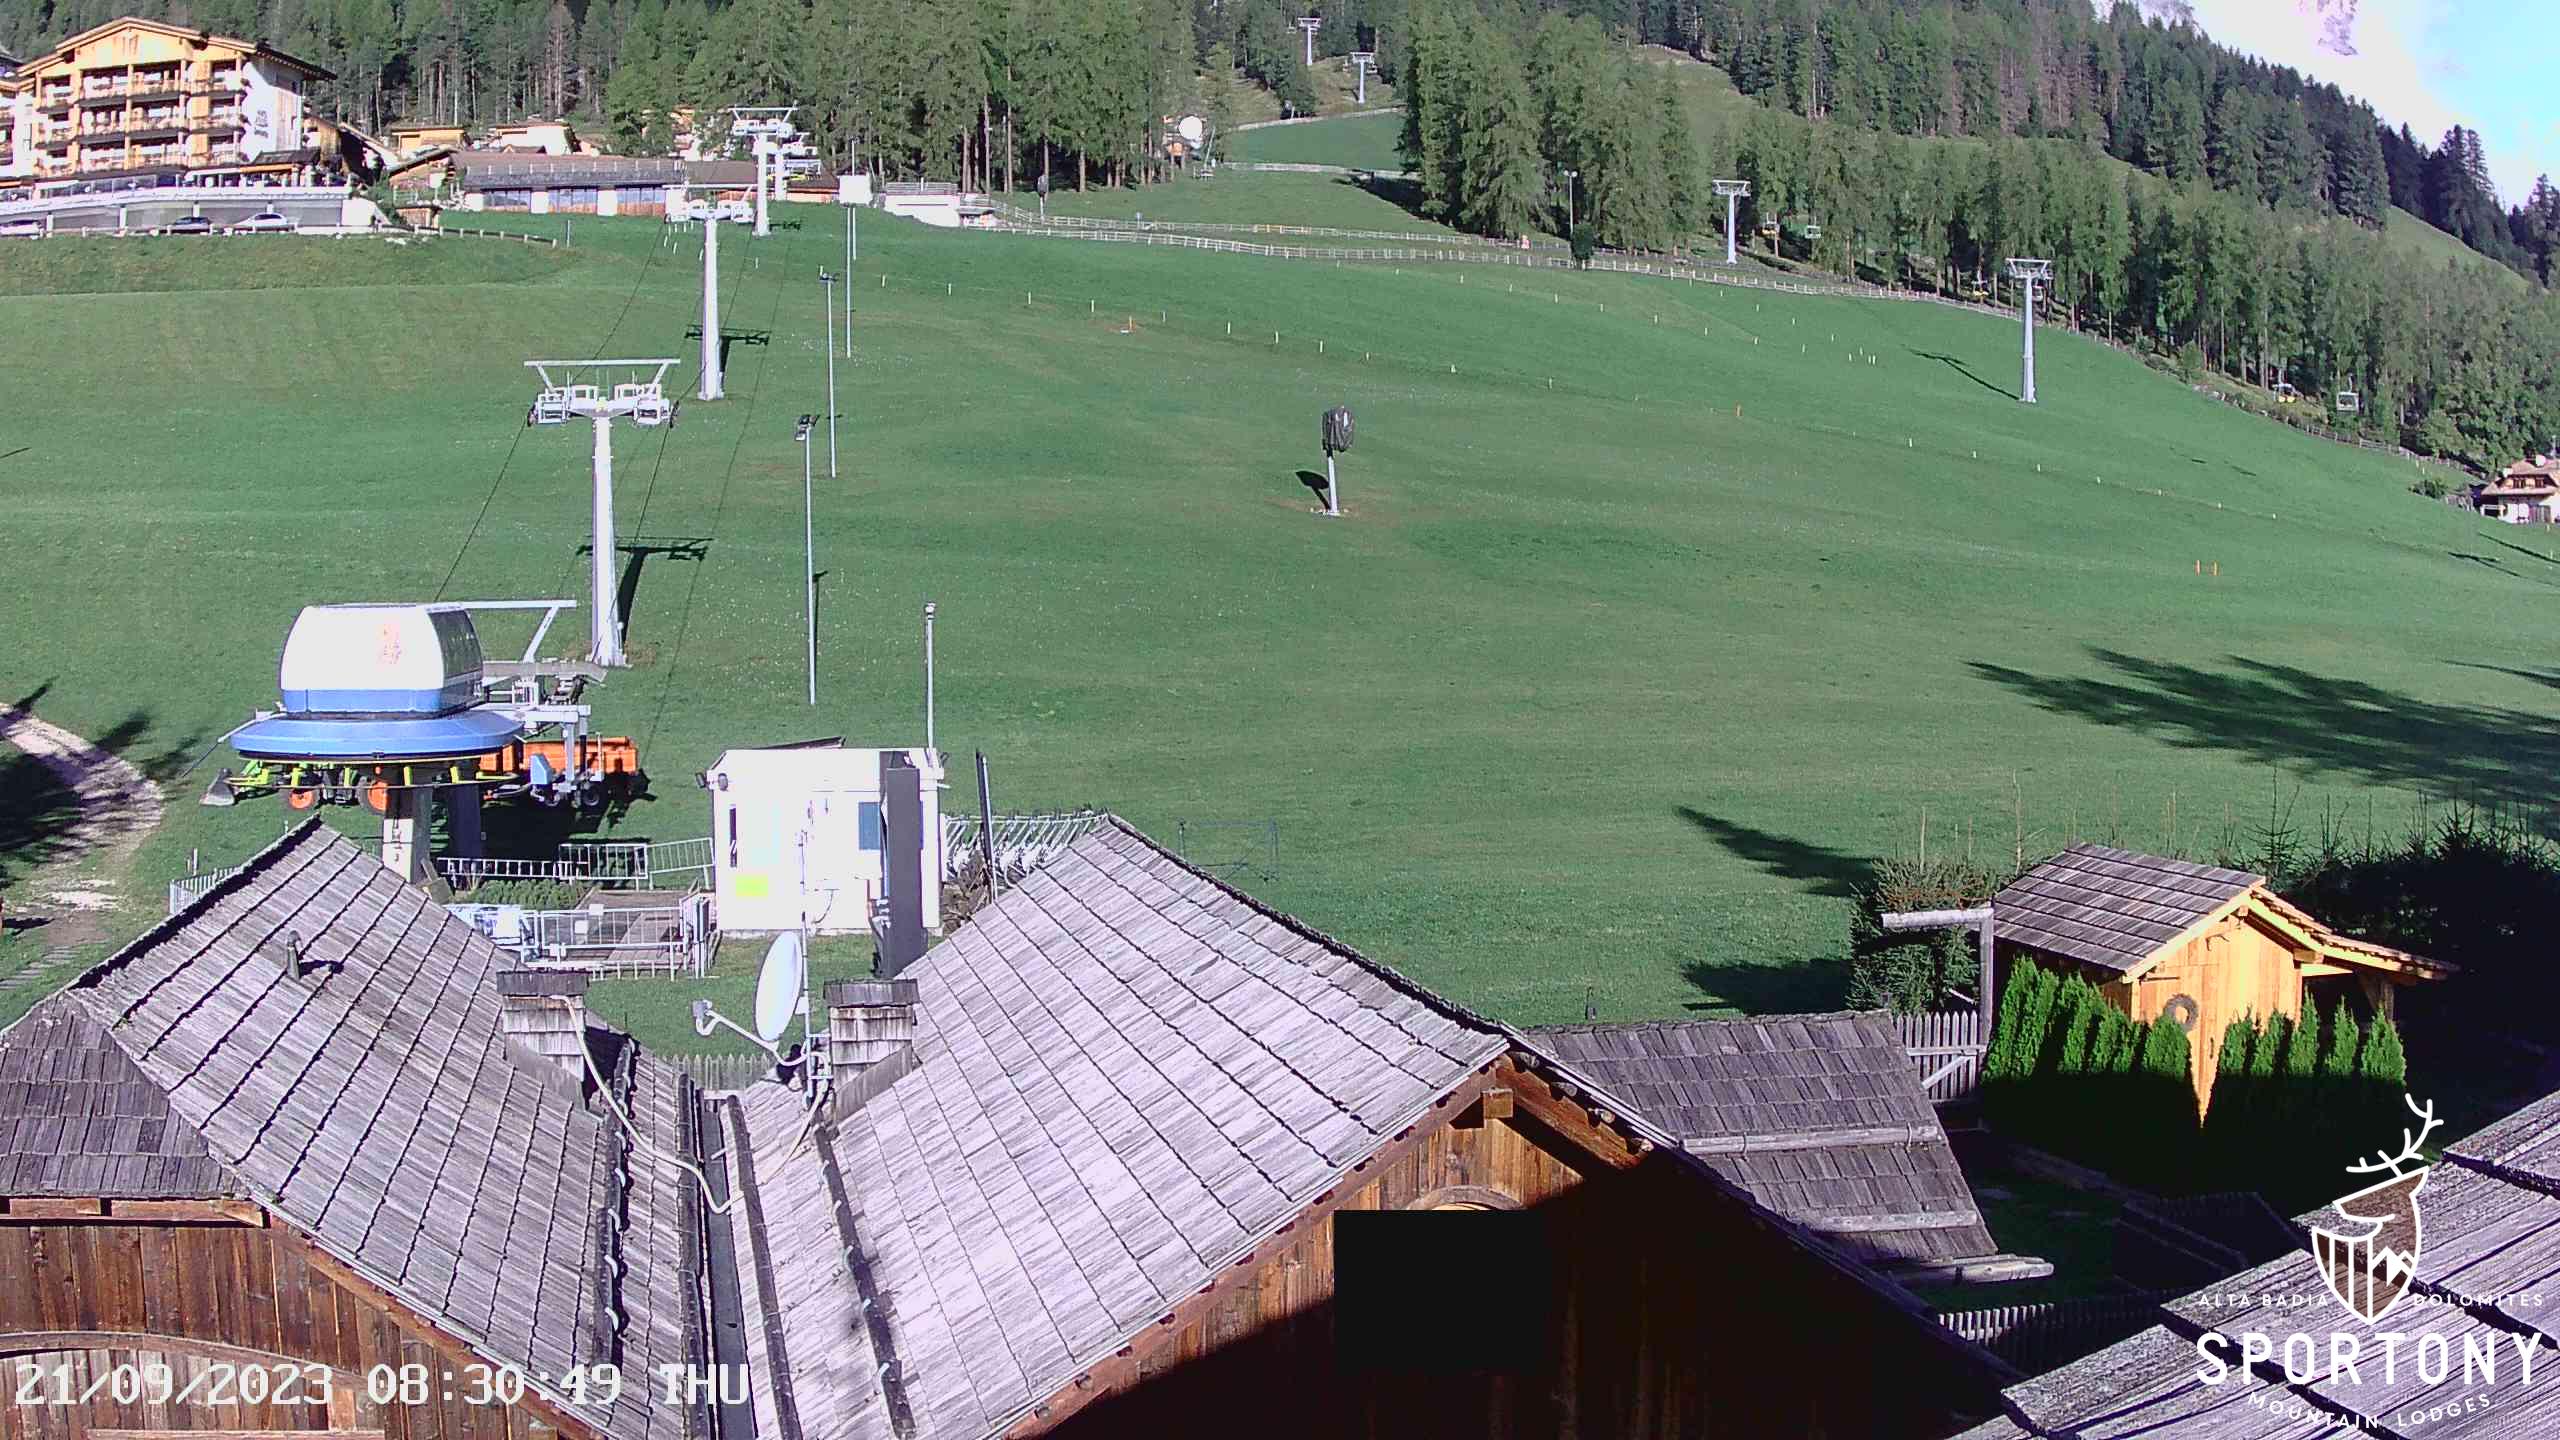 Webcam Chalets Sportony Lodge ski in ski out piste Gardenaccia Dolomiti Superski La Villa Alta Badia